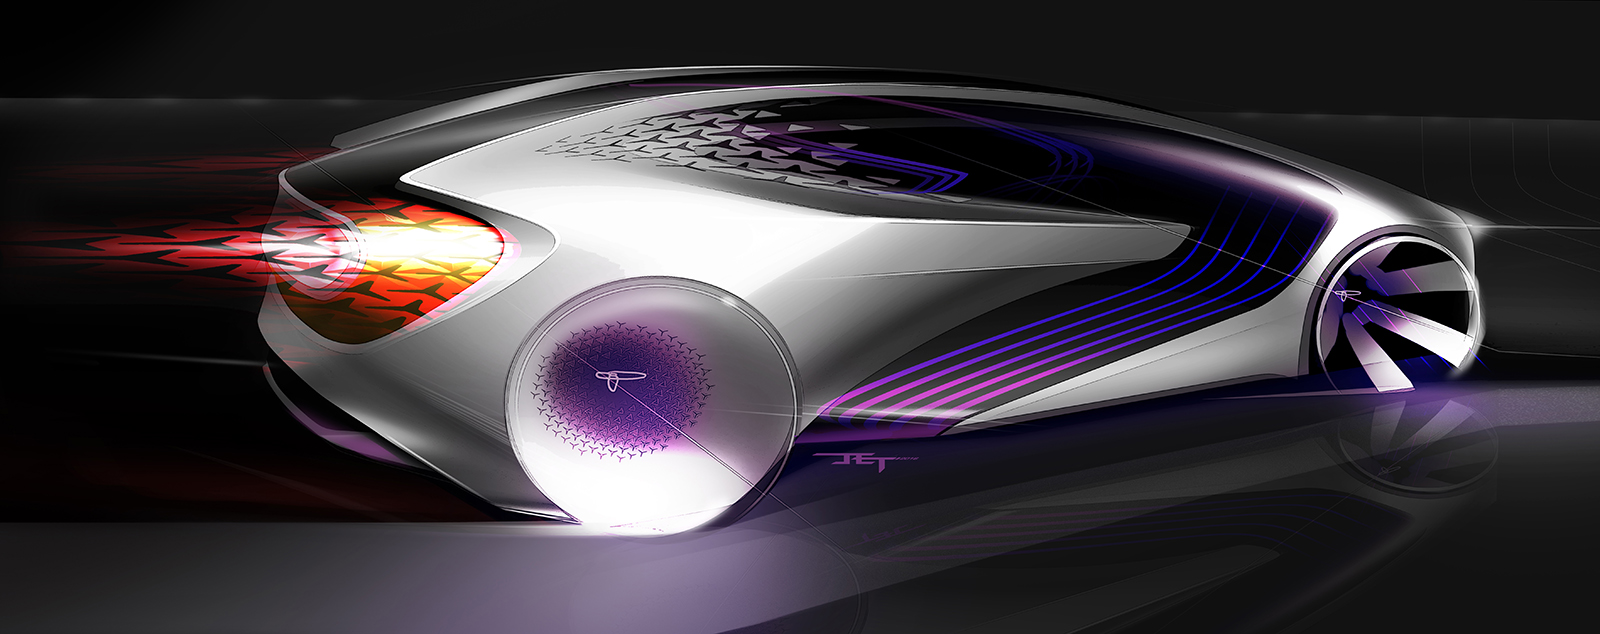 Toyota Concept-i, 2017 - Design Sketch